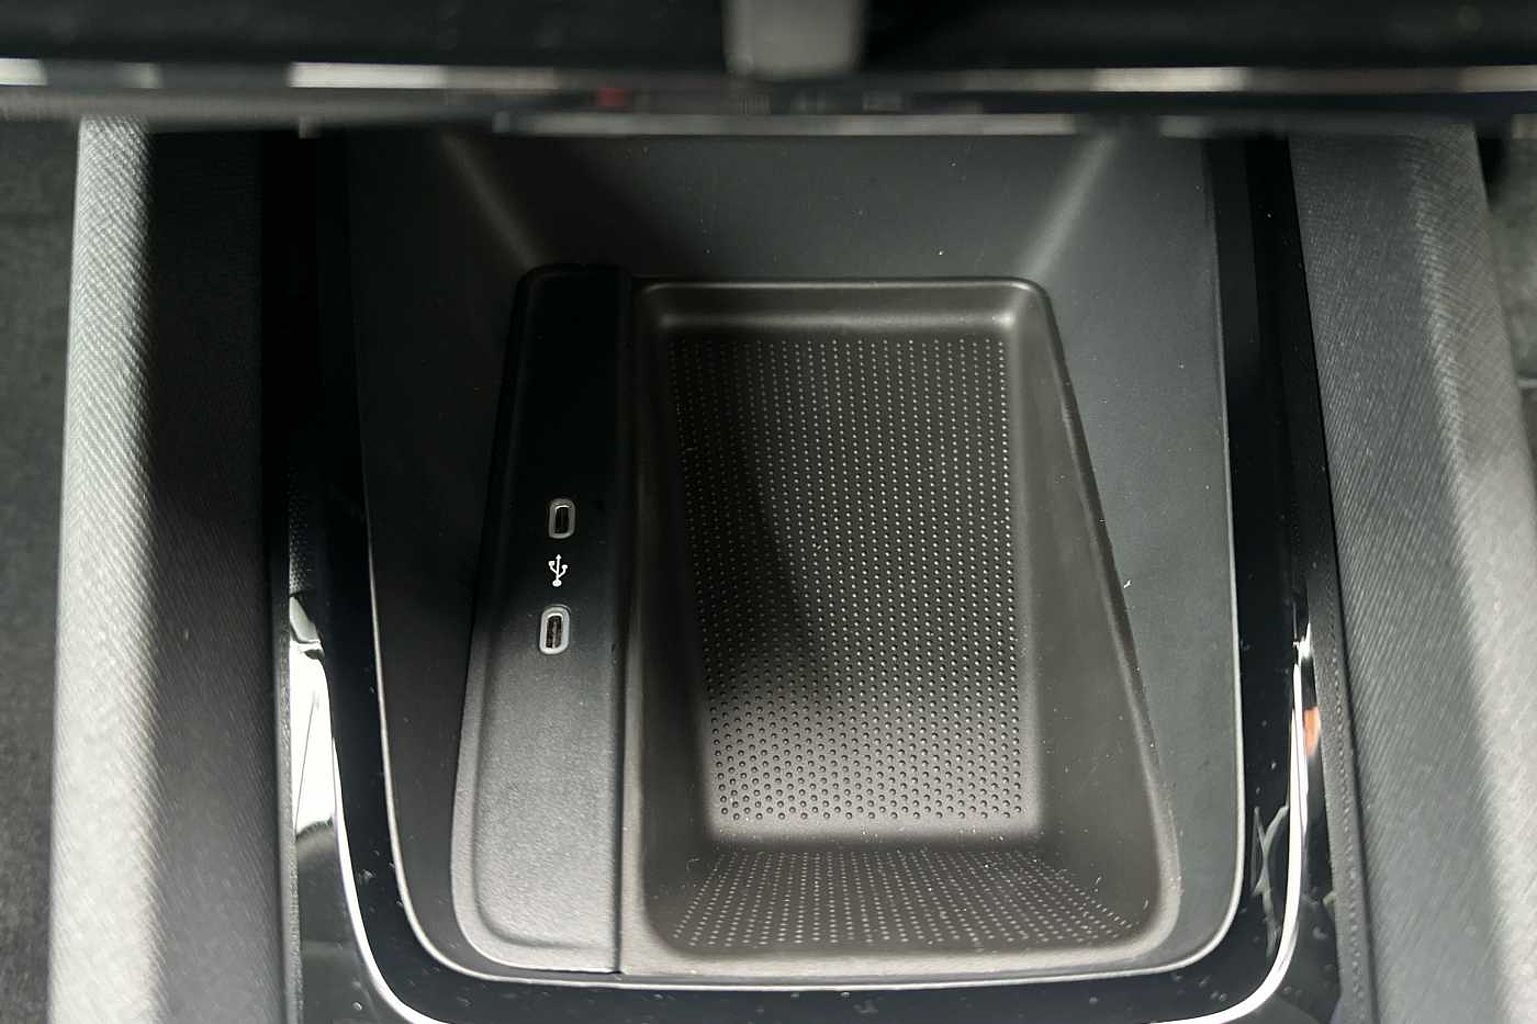 SKODA Octavia 2.0 TDI (115ps) SE Technology Hatchback *LEZ Compliant*